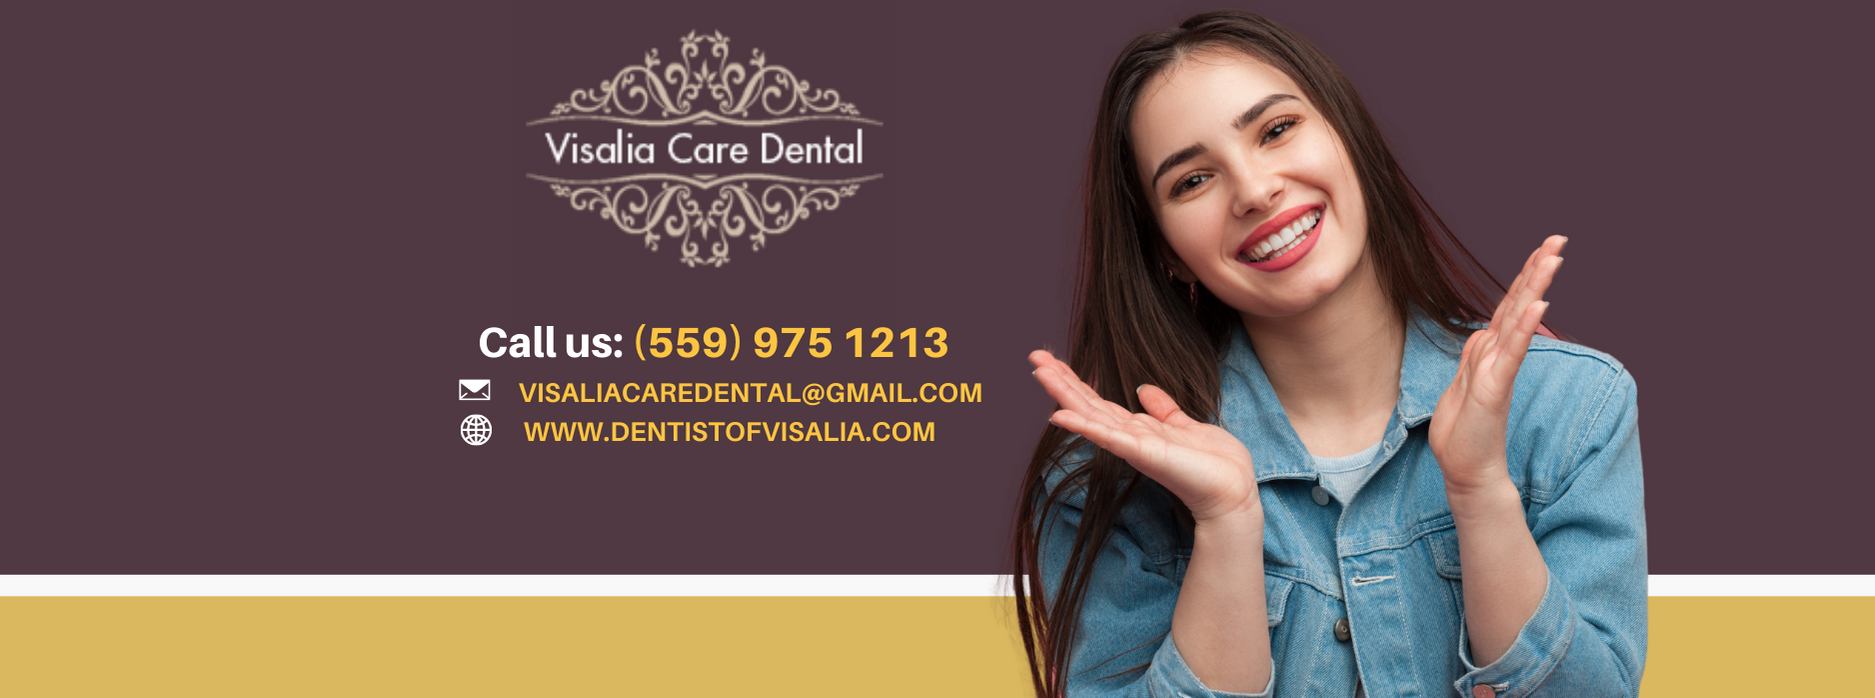 Visalia Care Dental